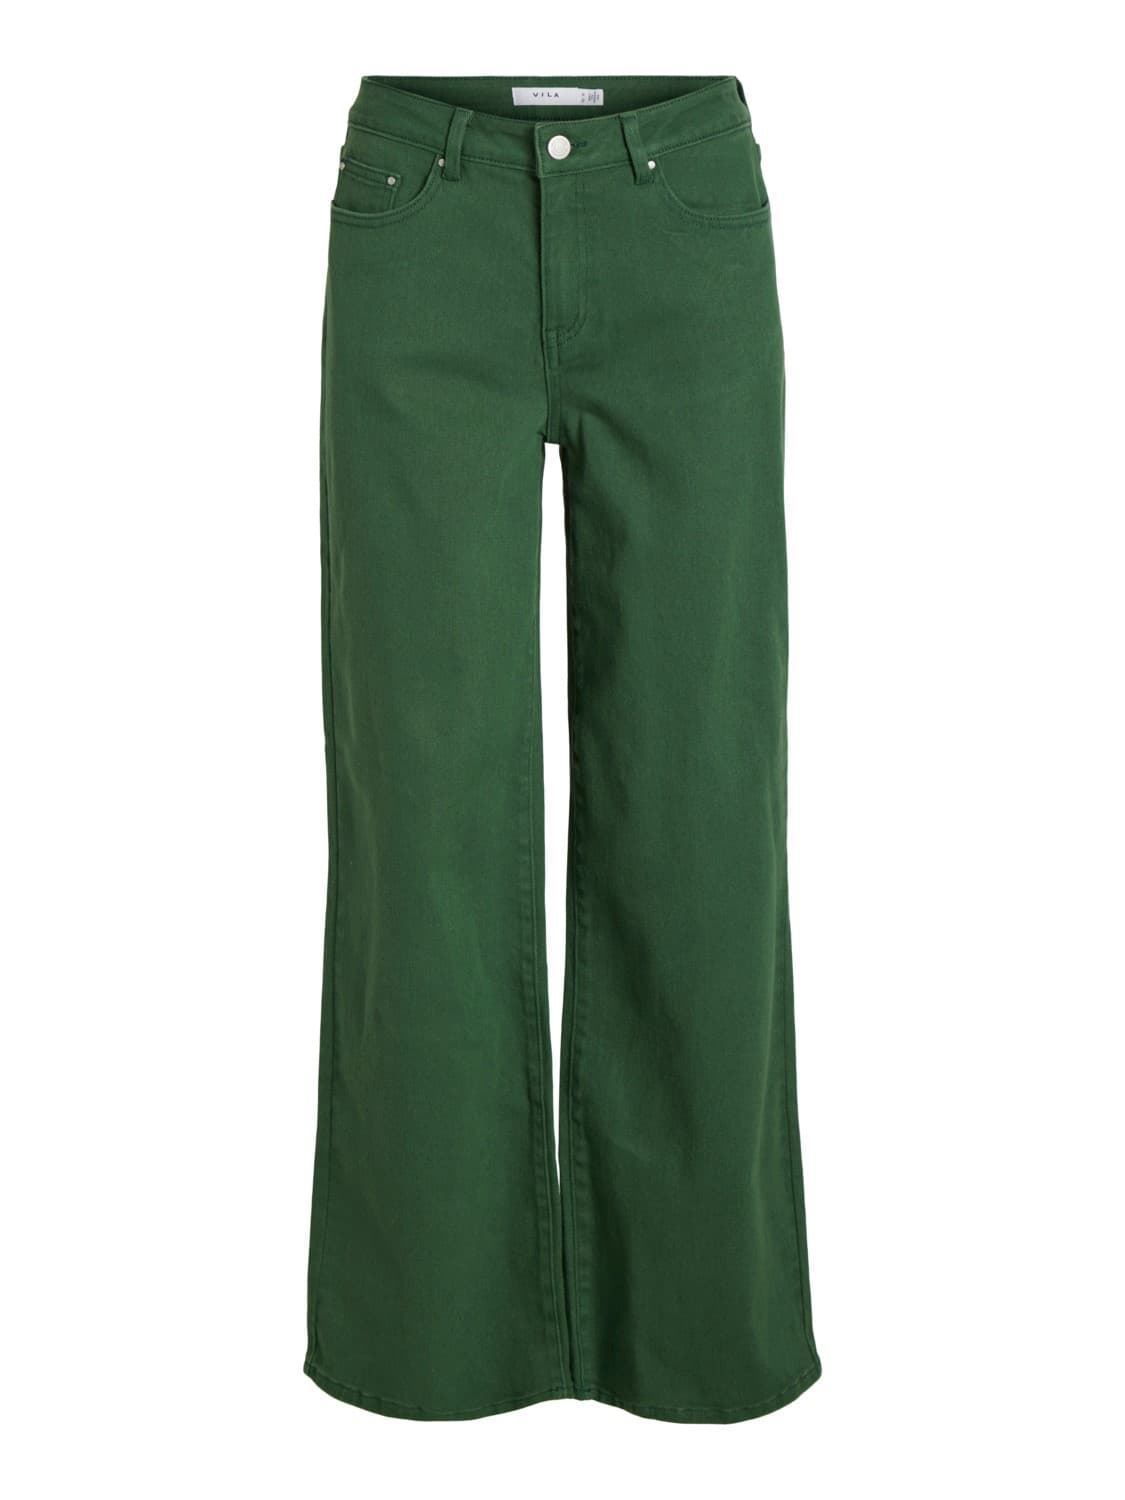 Pantalón verde Vigree - Imagen 1